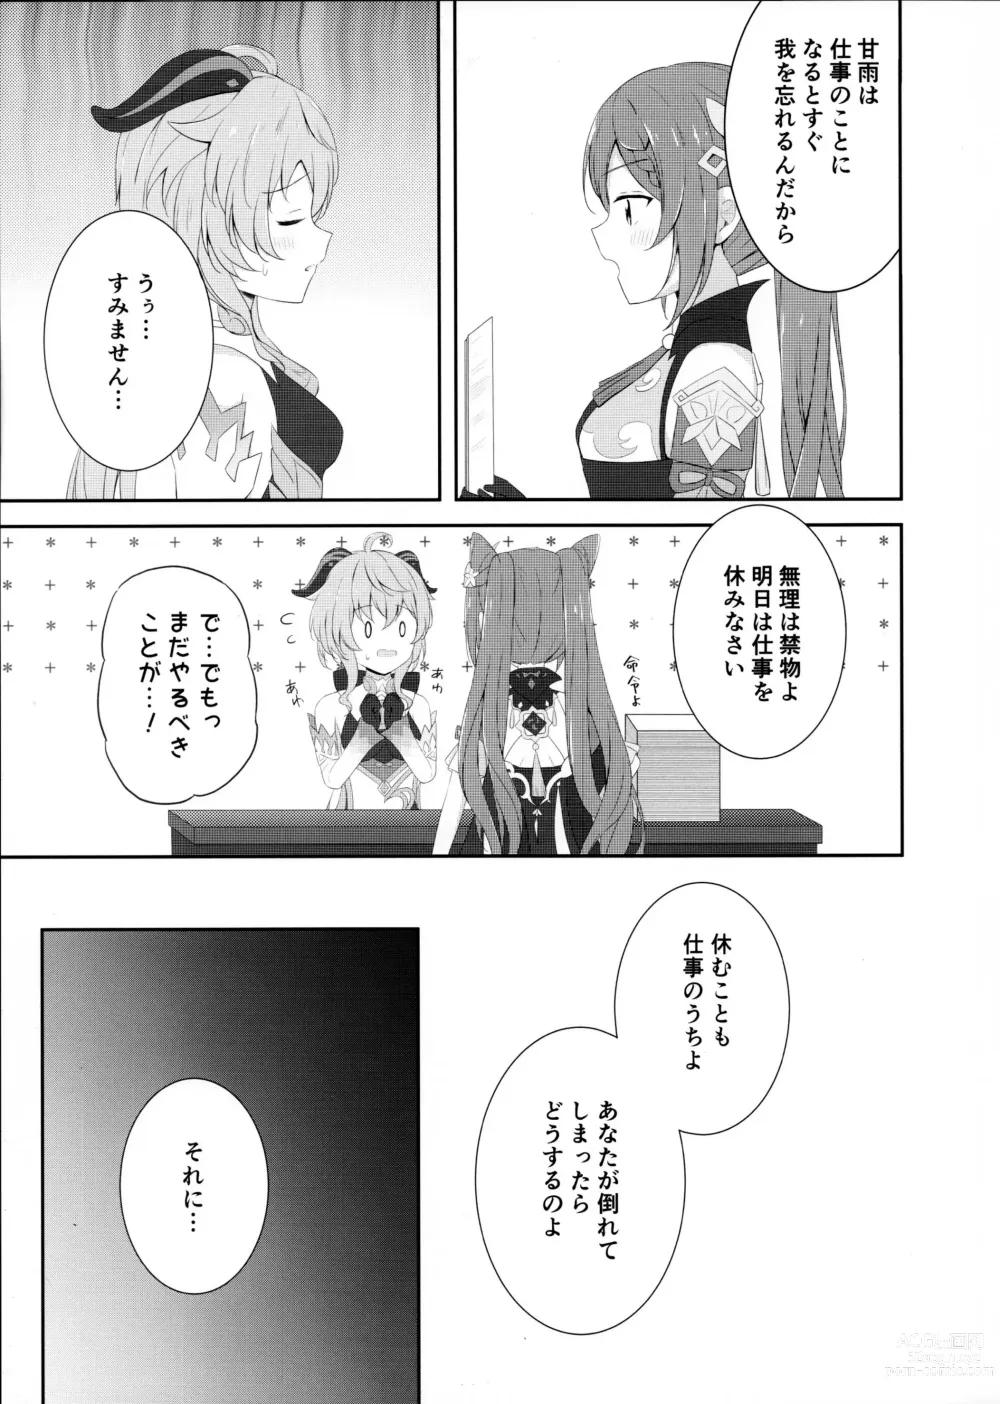 Page 4 of doujinshi KokuKan wa Echi ga Shitai!